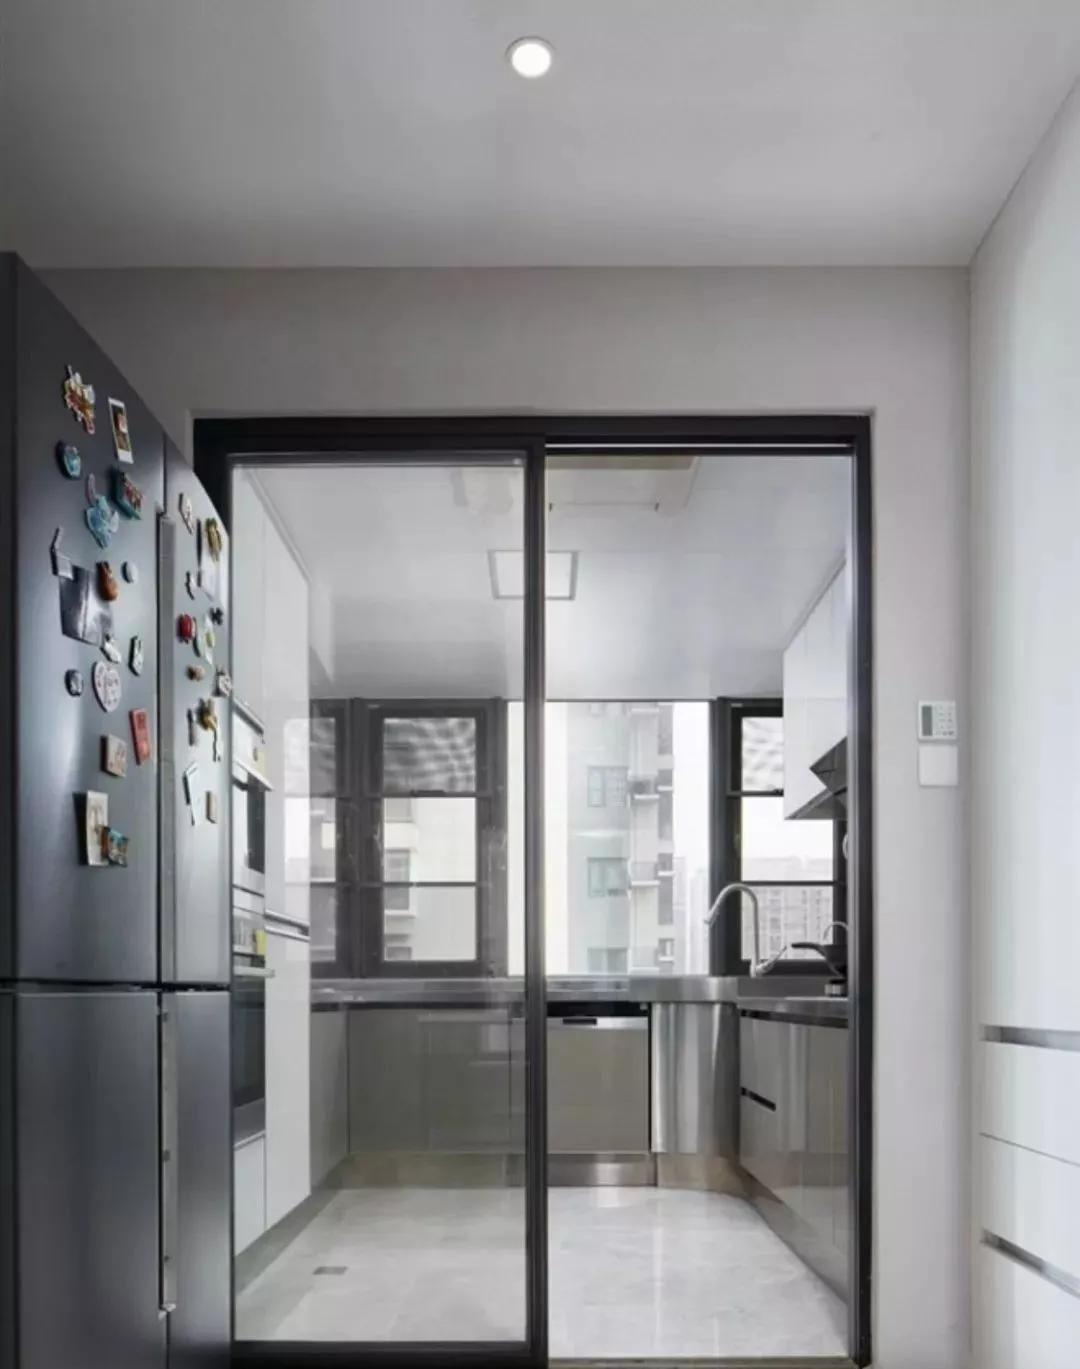 黑色边框的厨房推拉门,在现代装修中是个非常和谐的搭配,比如简约